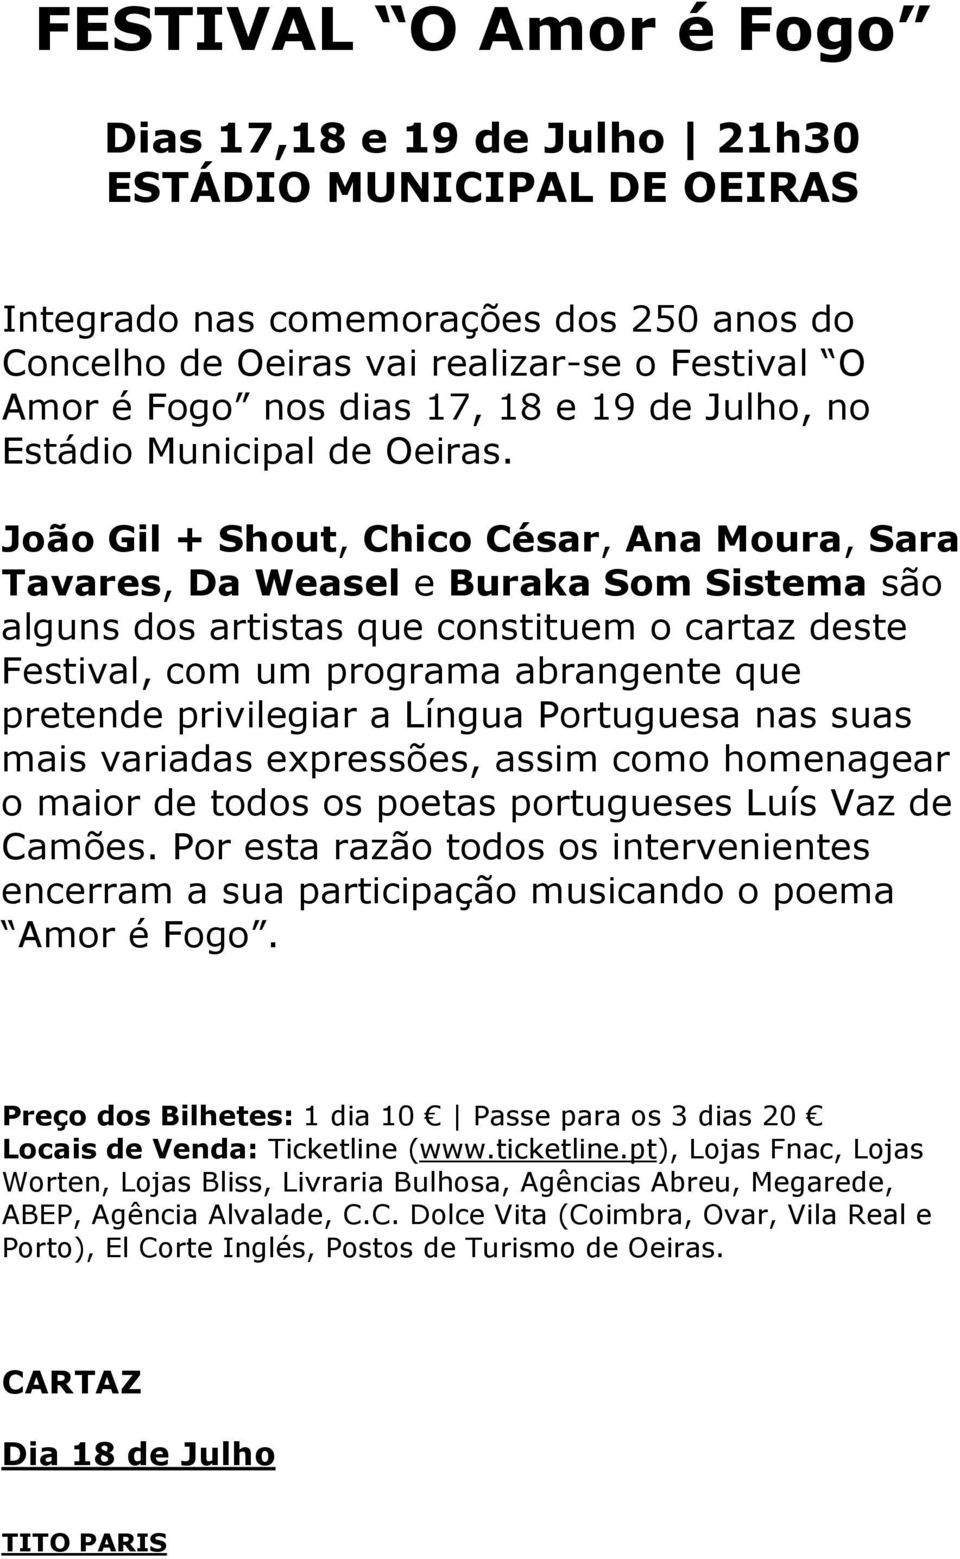 João Gil + Shout, Chico César, Ana Moura, Sara Tavares, Da Weasel e Buraka Som Sistema são alguns dos artistas que constituem o cartaz deste Festival, com um programa abrangente que pretende